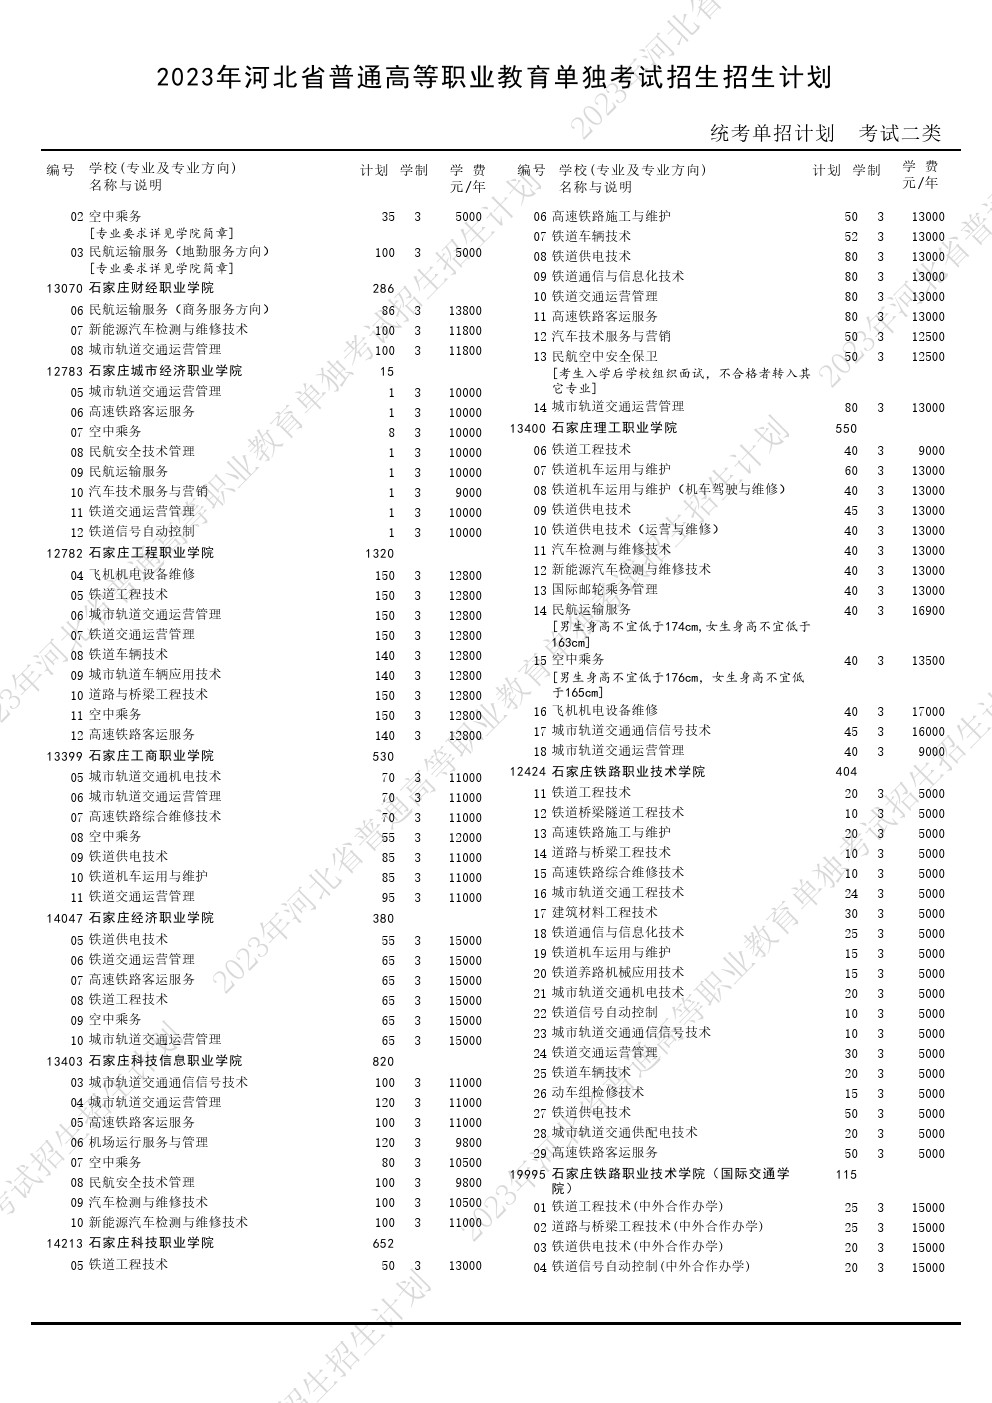 2023年河北省高职单招考试二类招生计划